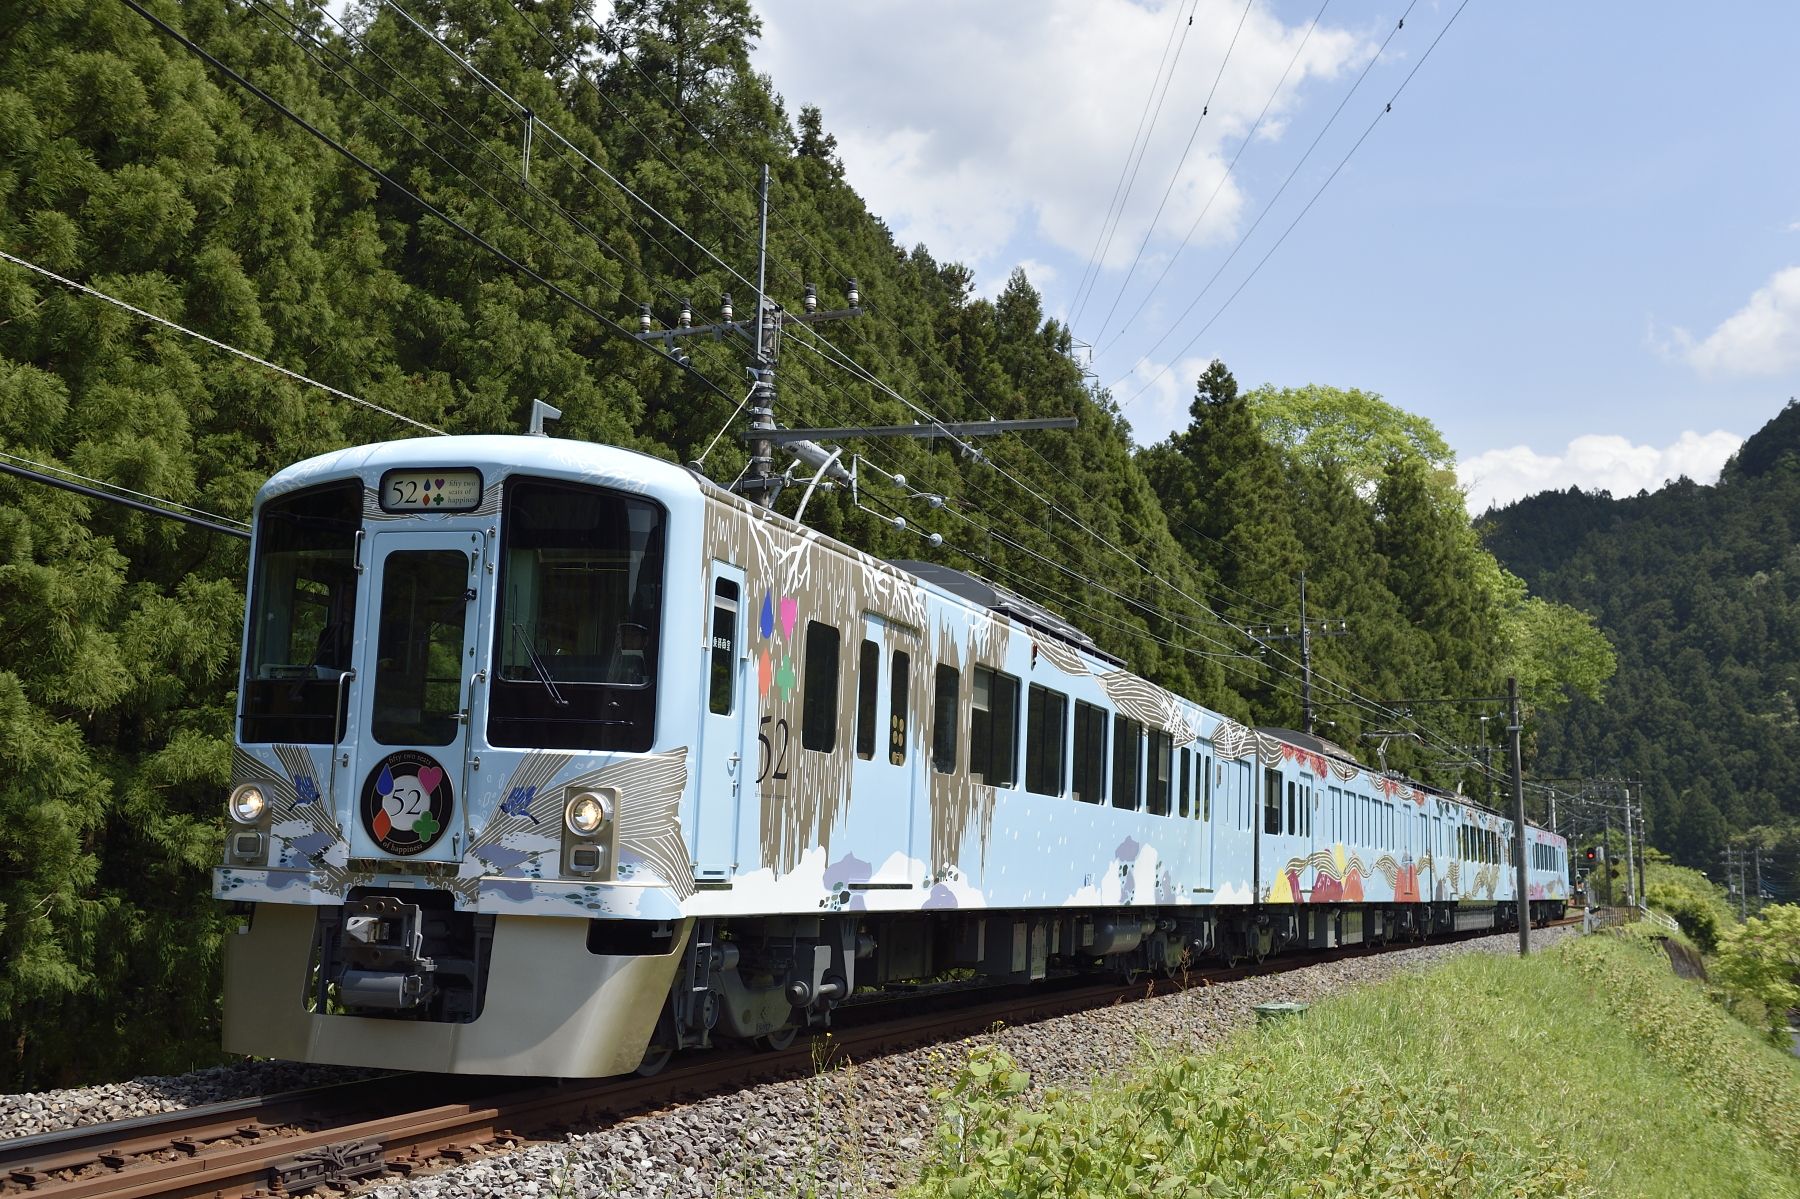 首都圏から秩父を走るレストラン列車・西武鉄道「52席の至福」の魅力、客席はまさに豪華レストランそのもの日本の鉄道「車両」旅（第8回） - 豊かに生きる